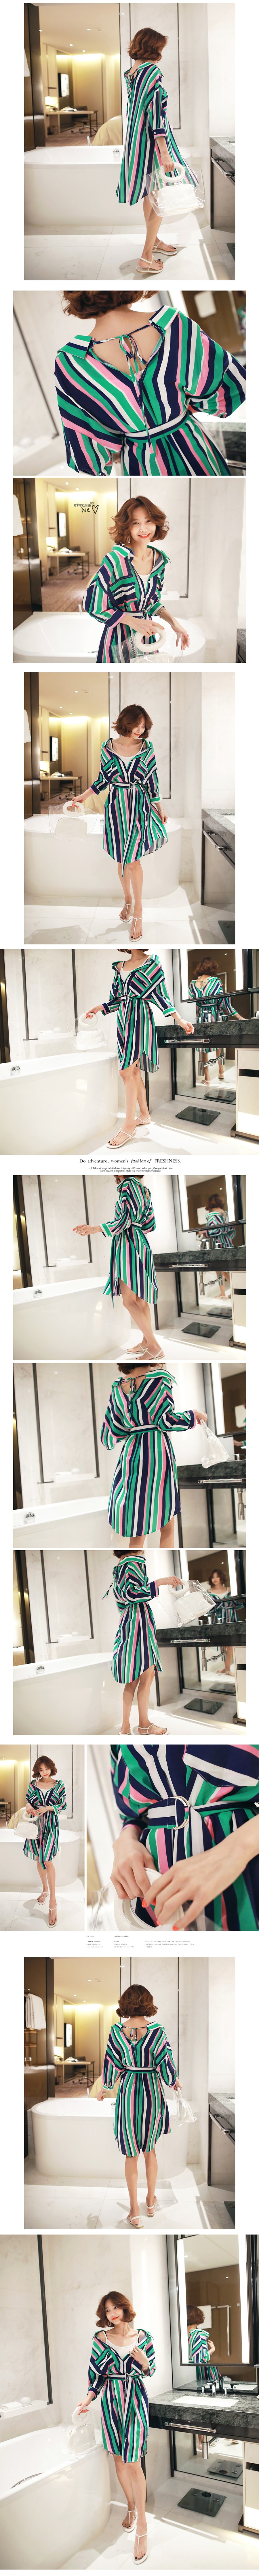 韩国正品 MAGZERO 超宽松色块衬衫裙配腰带 #绿色+粉色 One Size(Free) [免费配送]